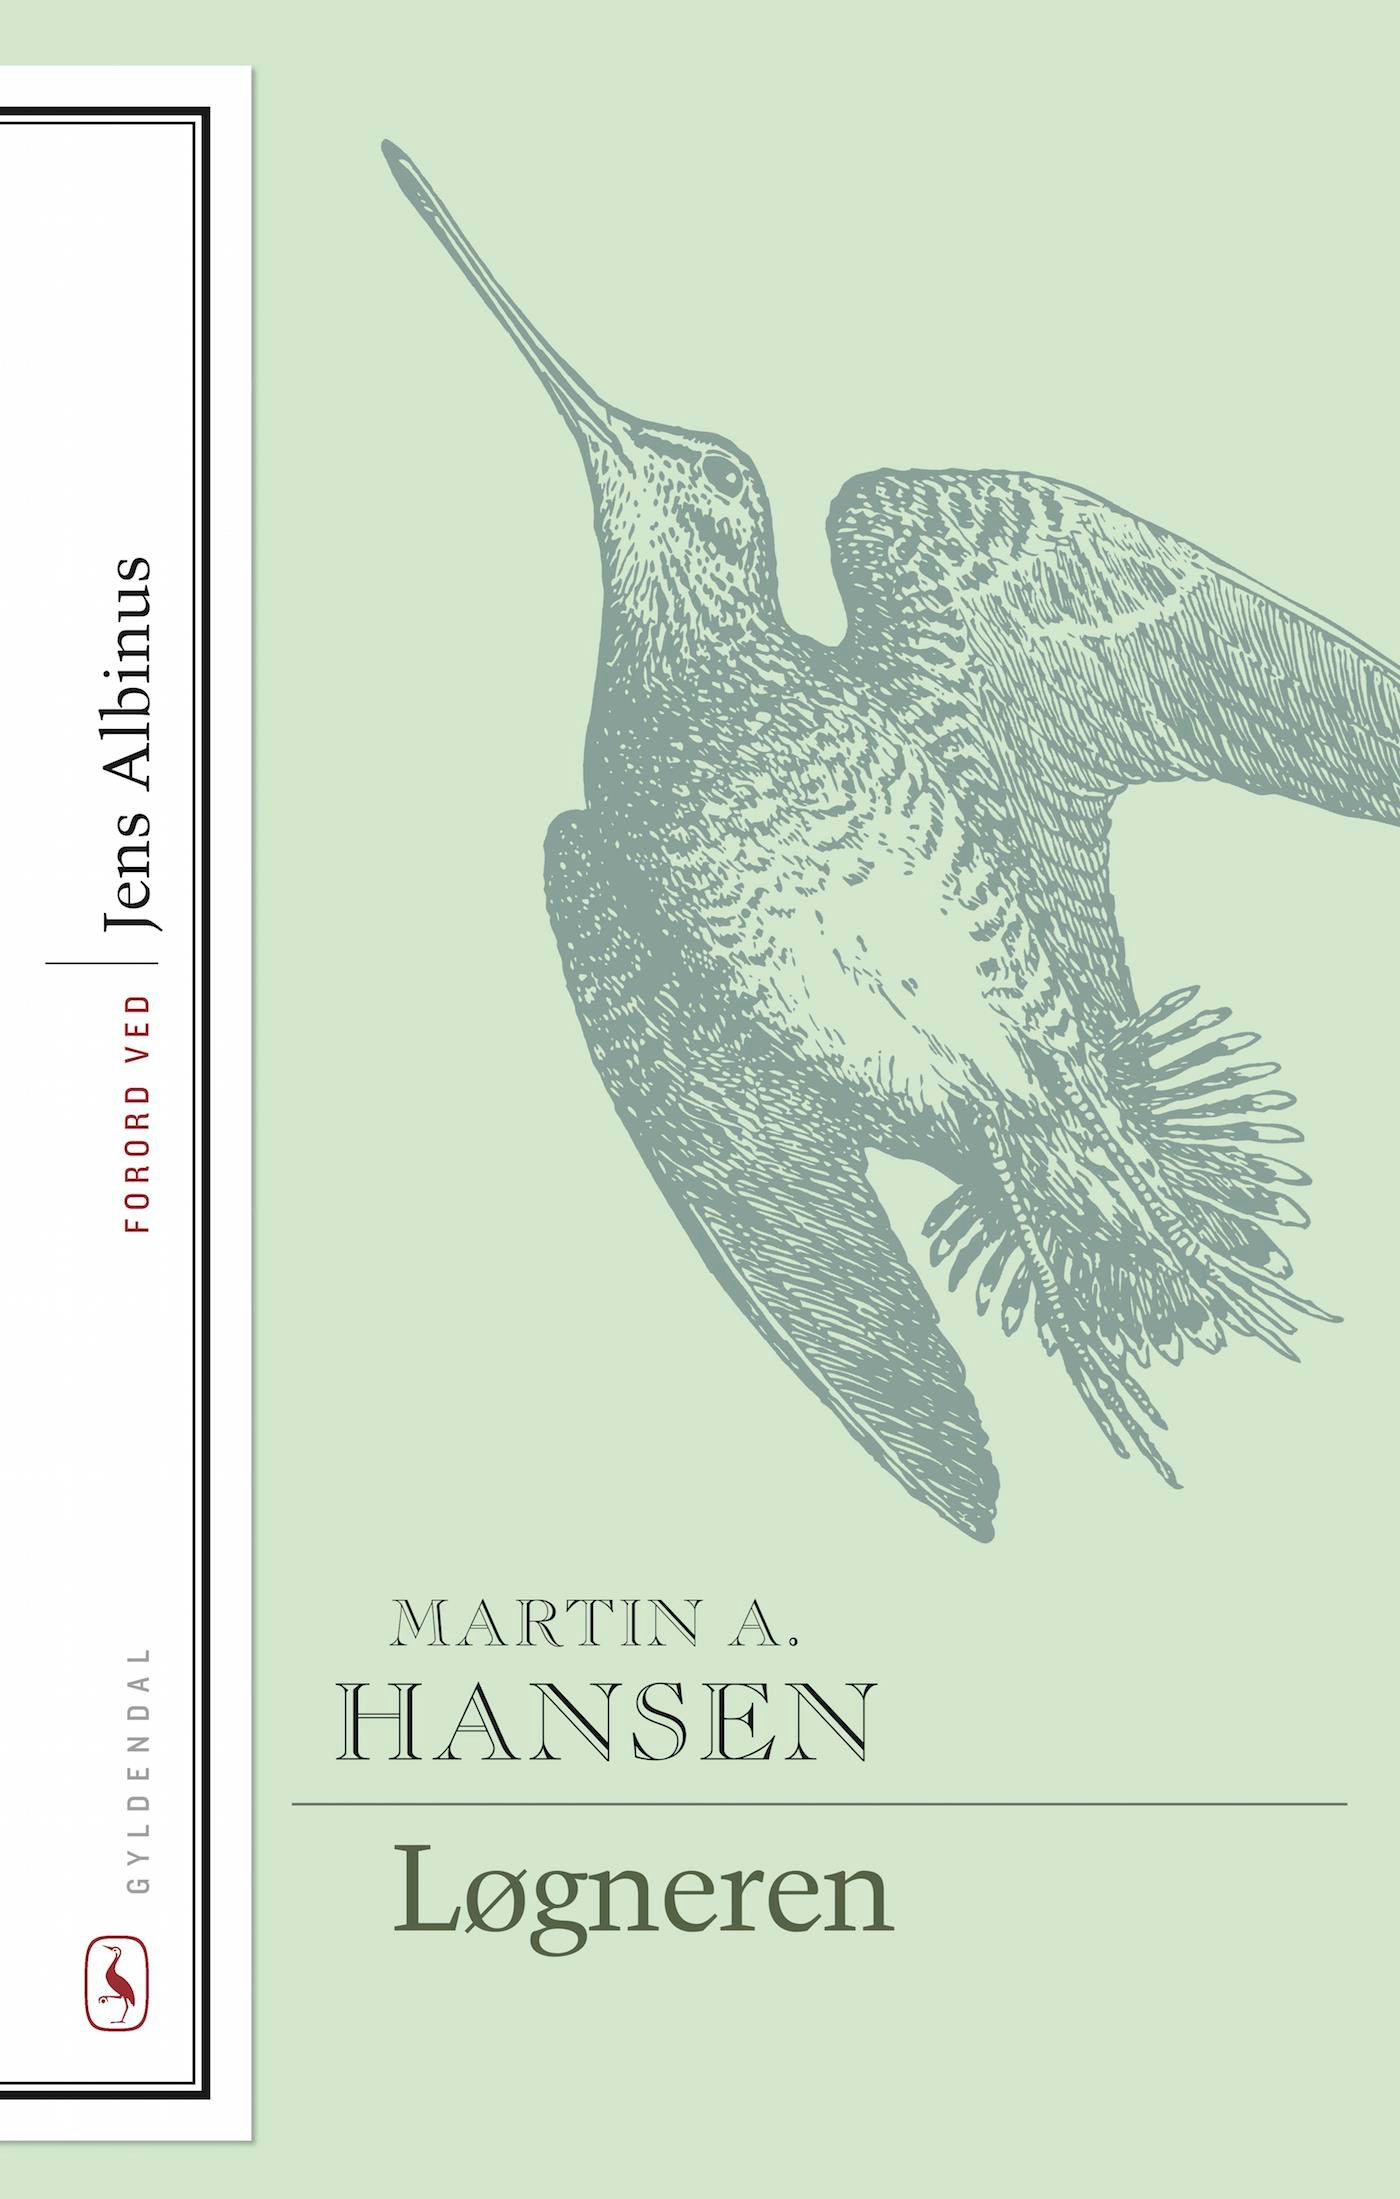 Løgneren, eBook by Martin A. Hansen